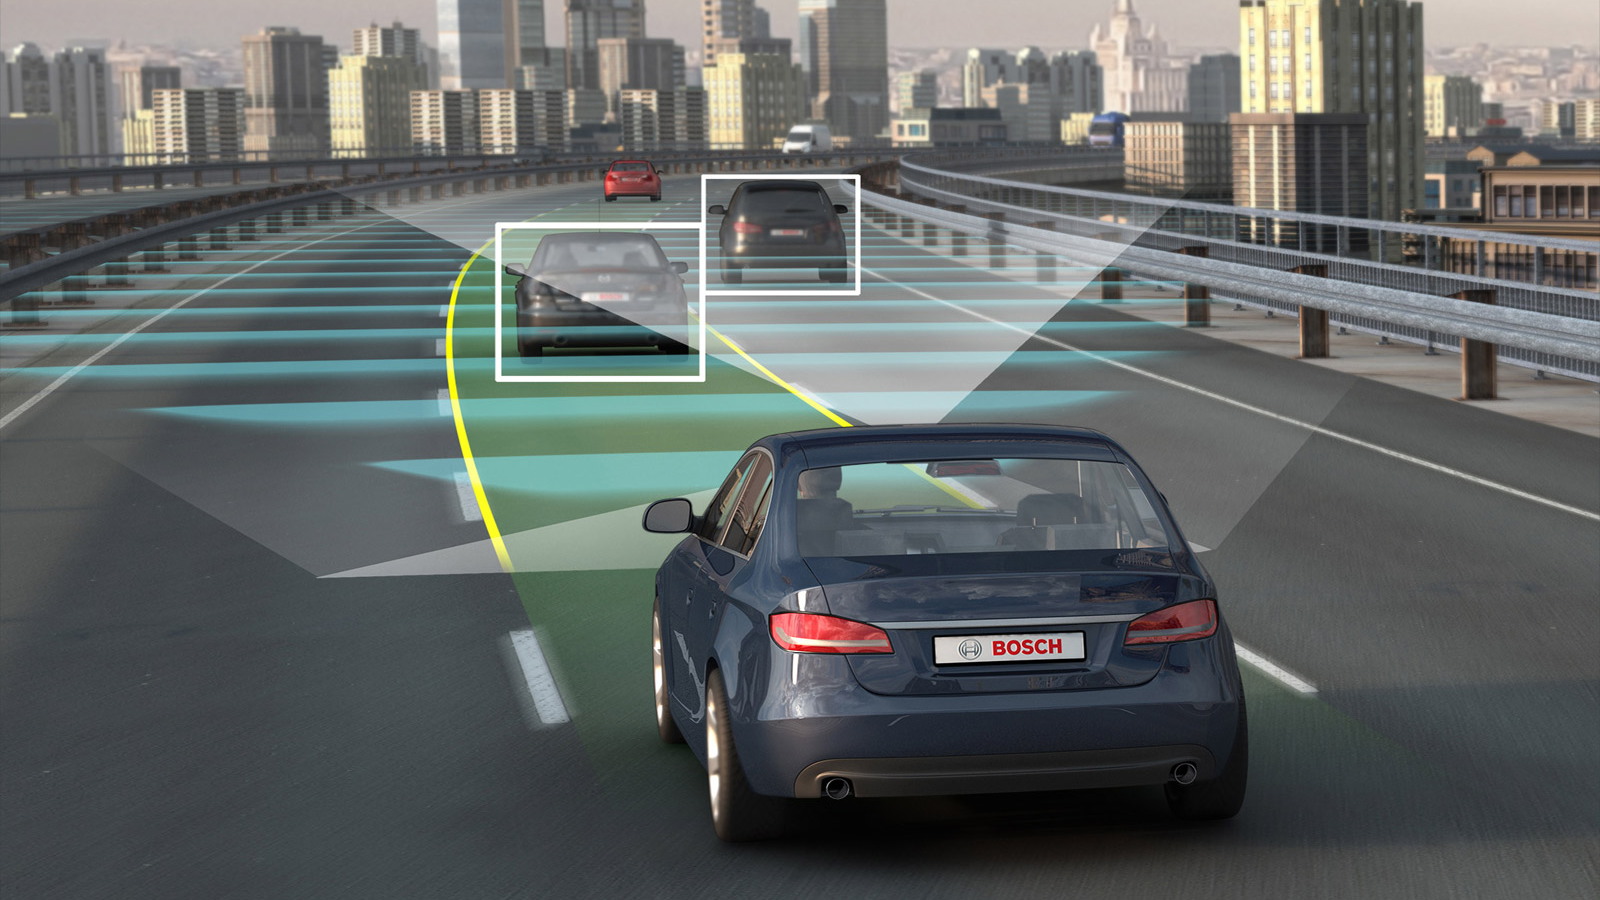 Bosch autonomous car technology